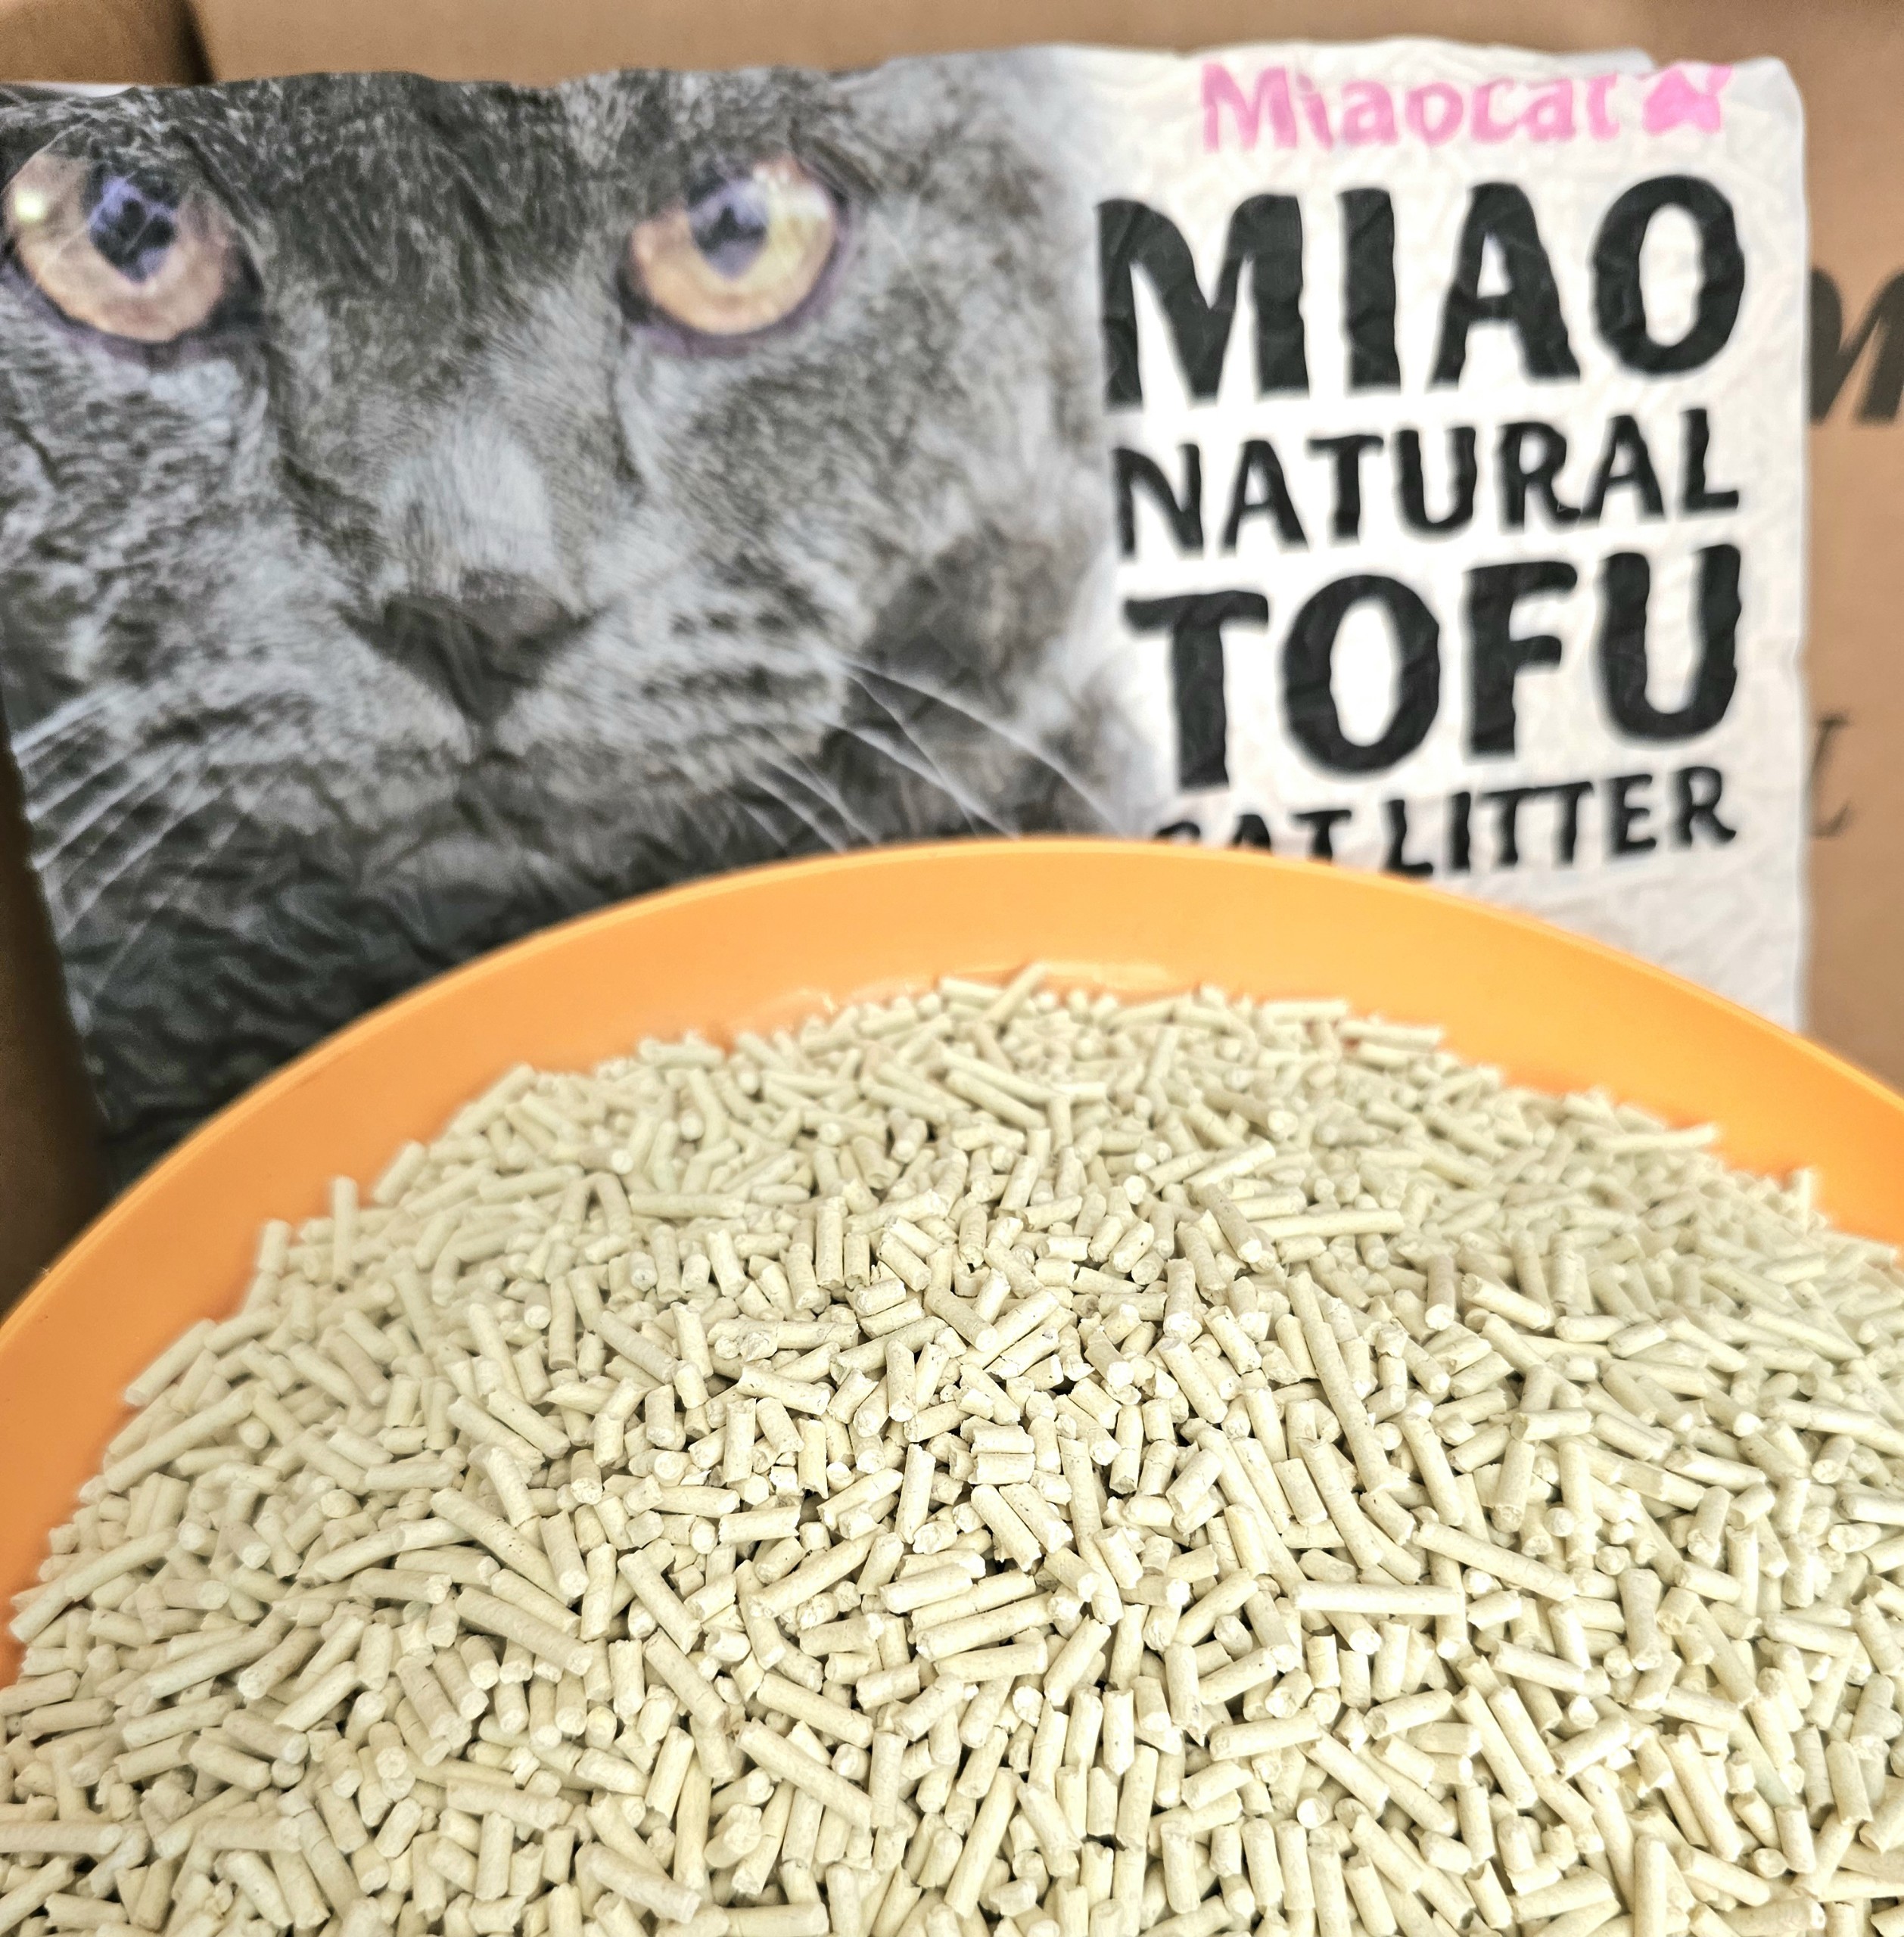 Cát vệ sinh đậu nành MIAO 6L cho mèo - Hương Jasmine - Miaocat